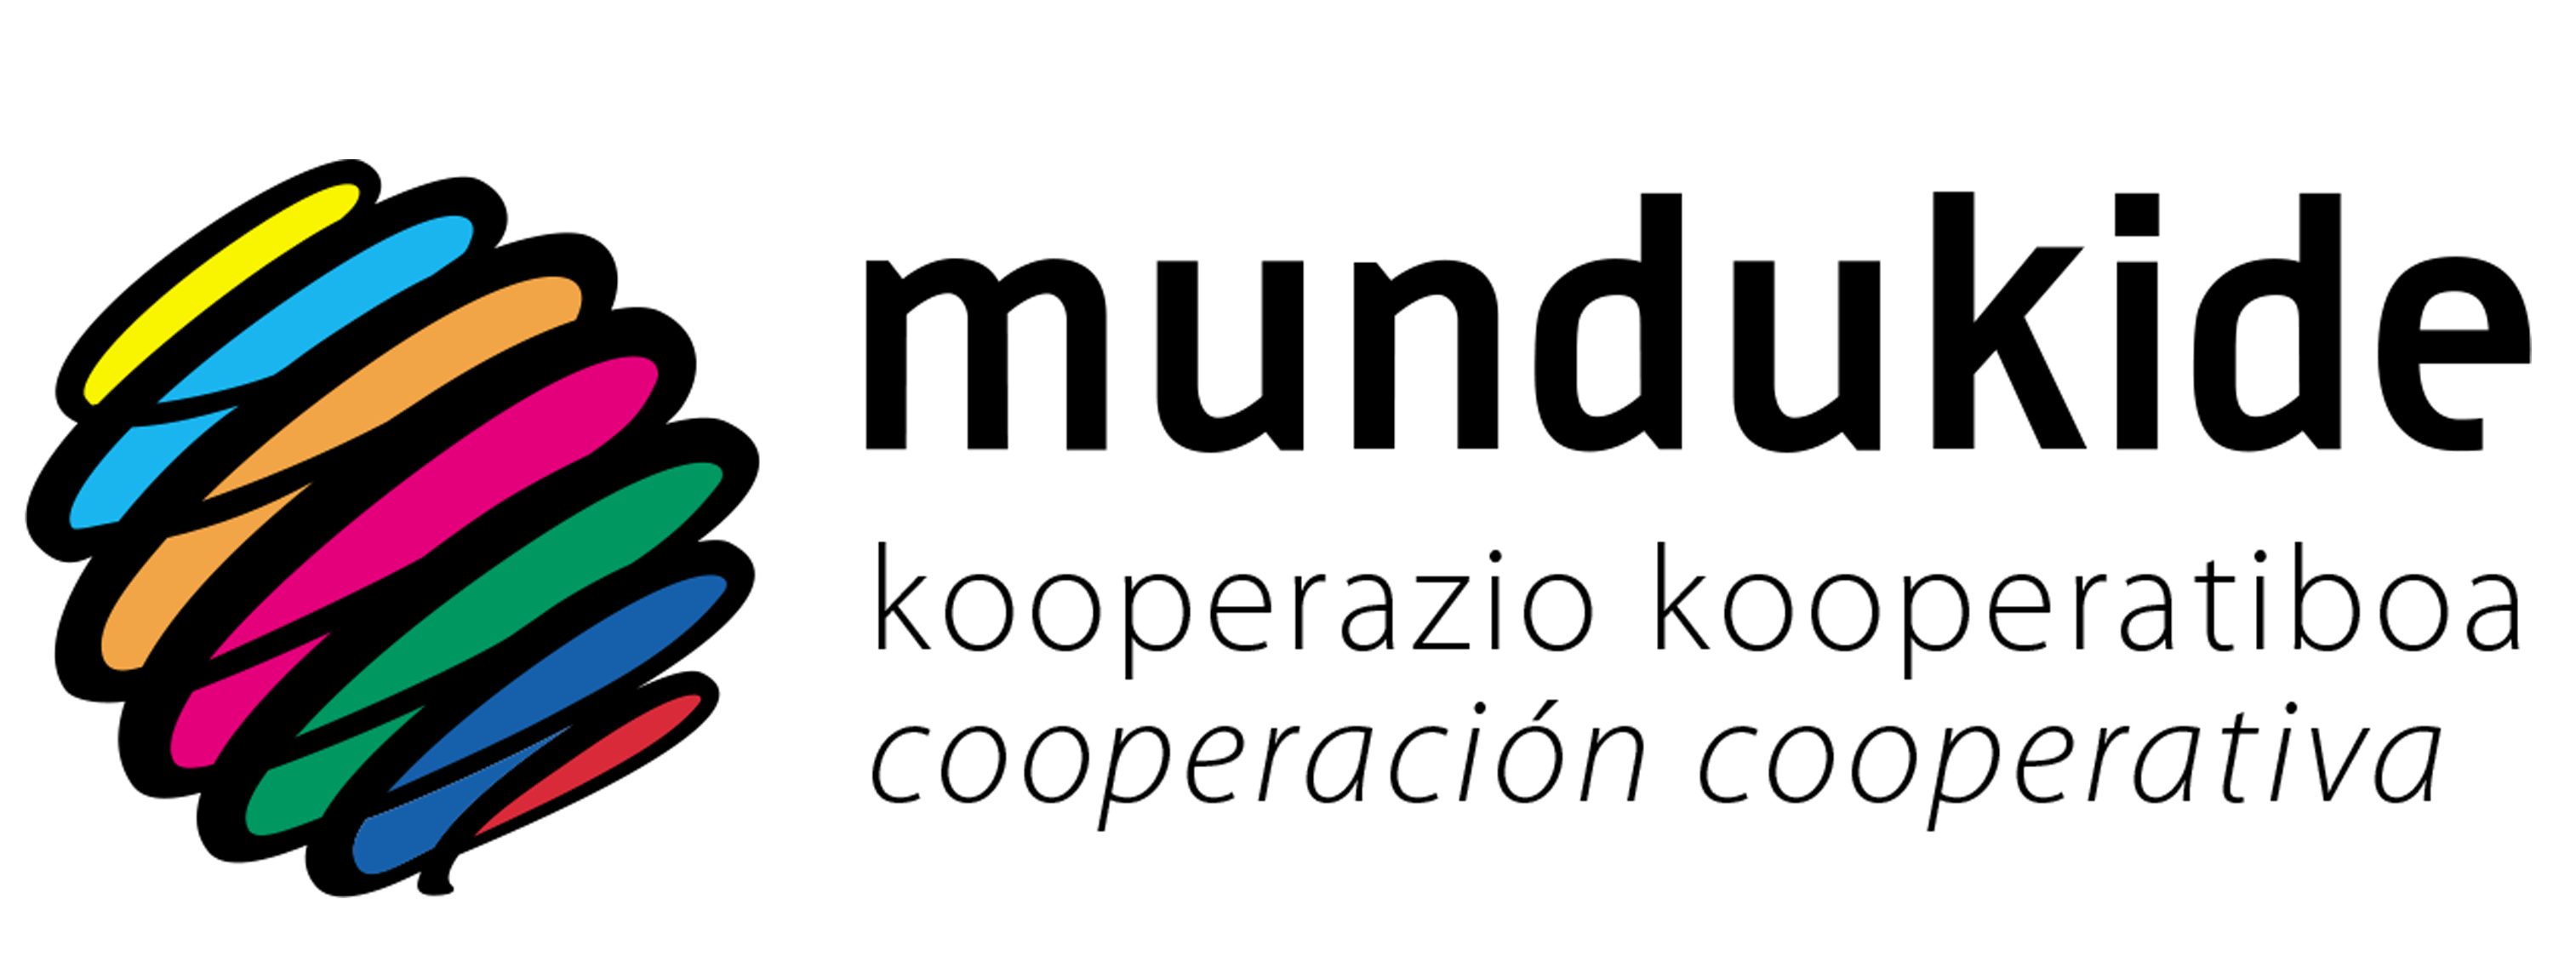 Mundukide